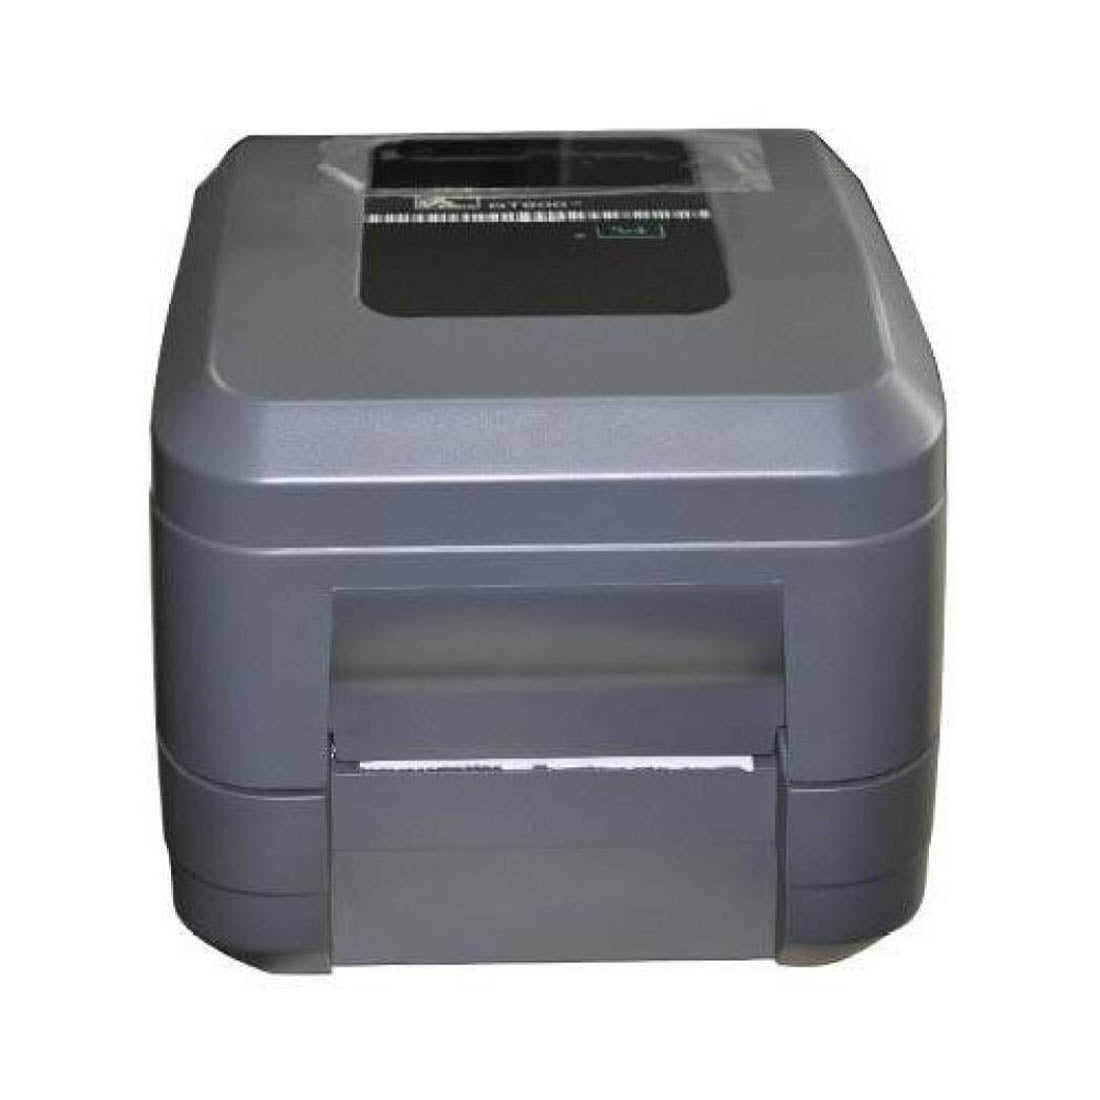 Zebra GT800 Thermal Transfer Printer